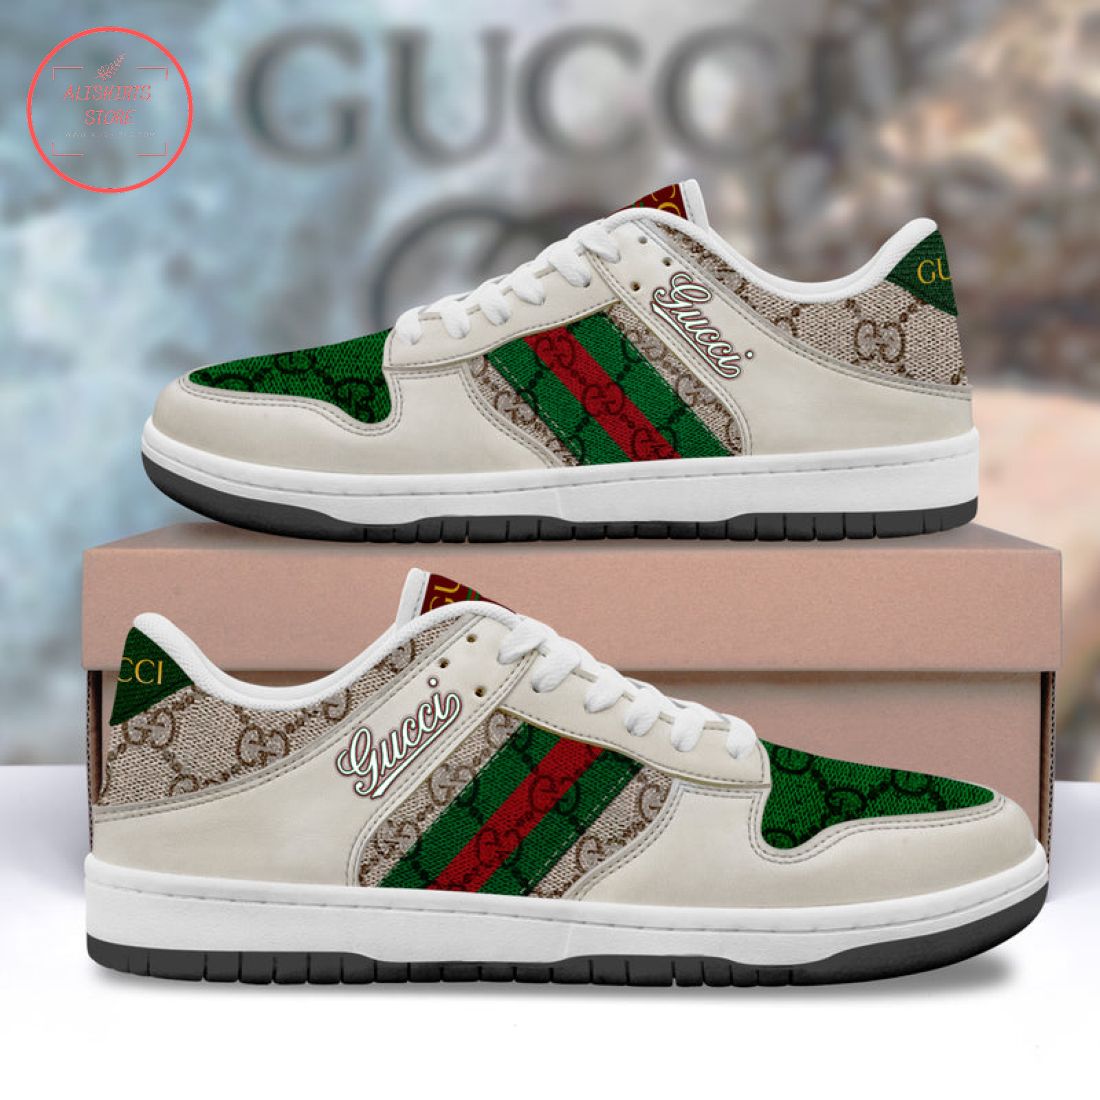 Gucci Luxury Low Air Jordan 1 Sneakers